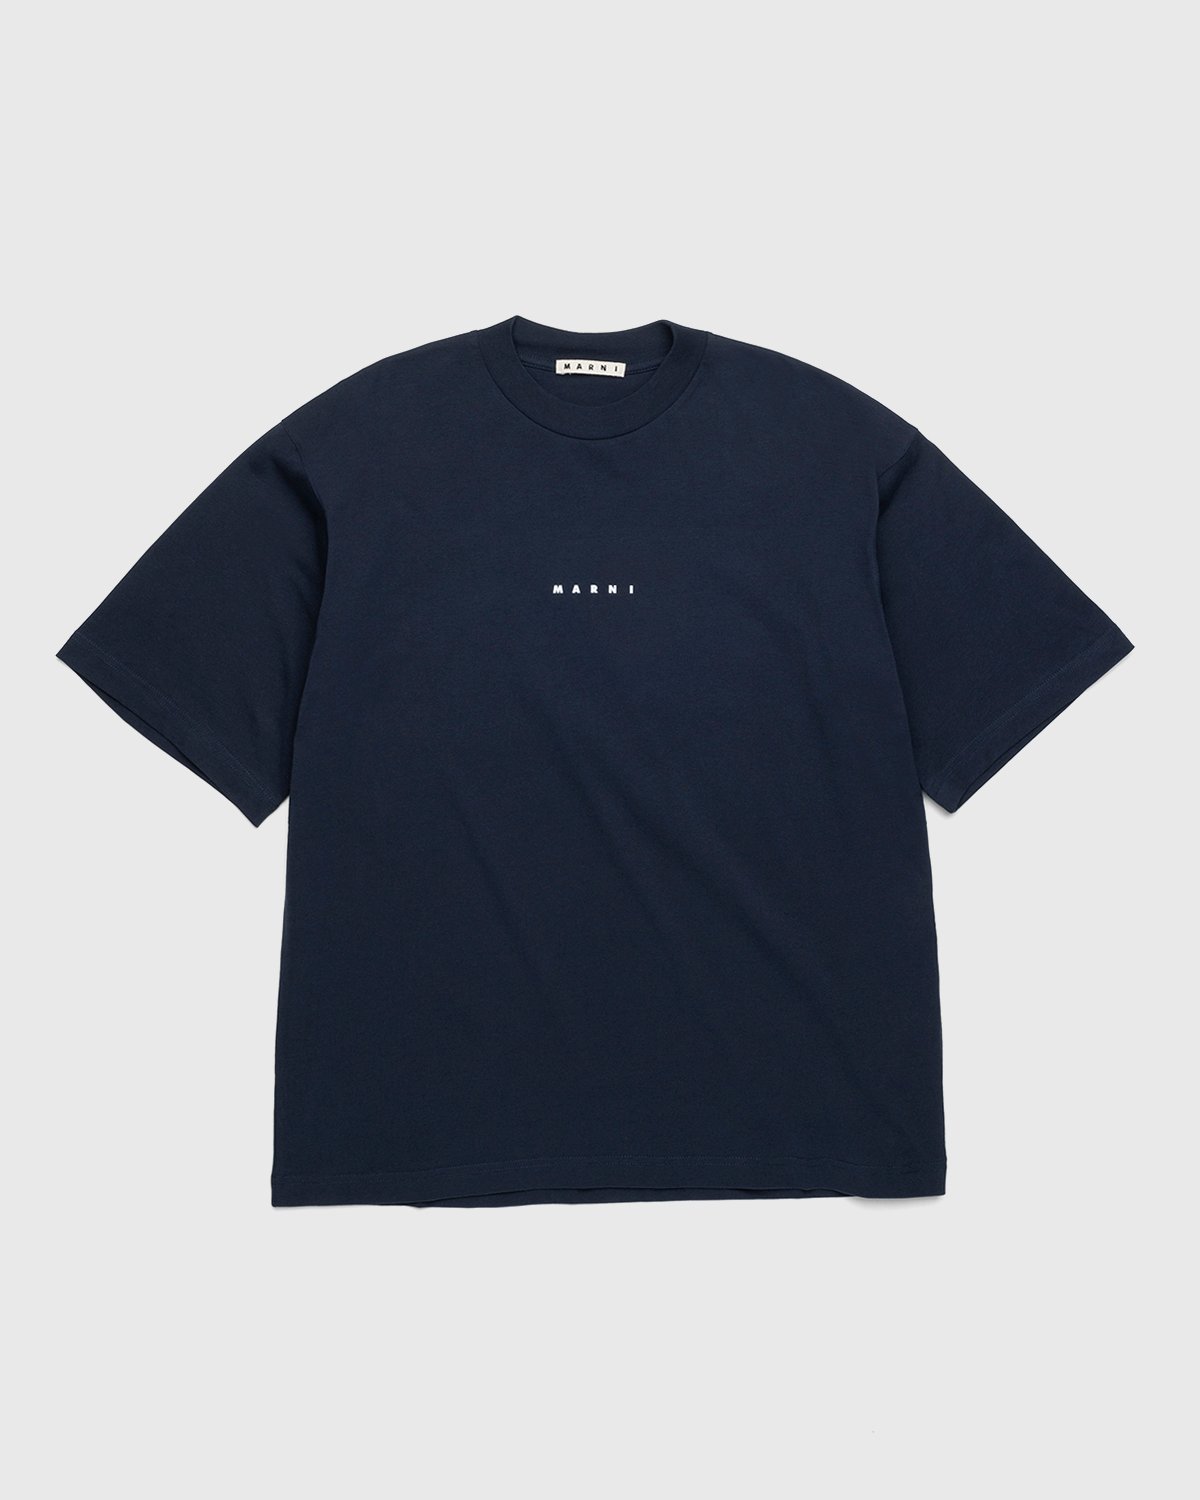 Marni - Logo T-Shirt Navy - Clothing - Blue - Image 1